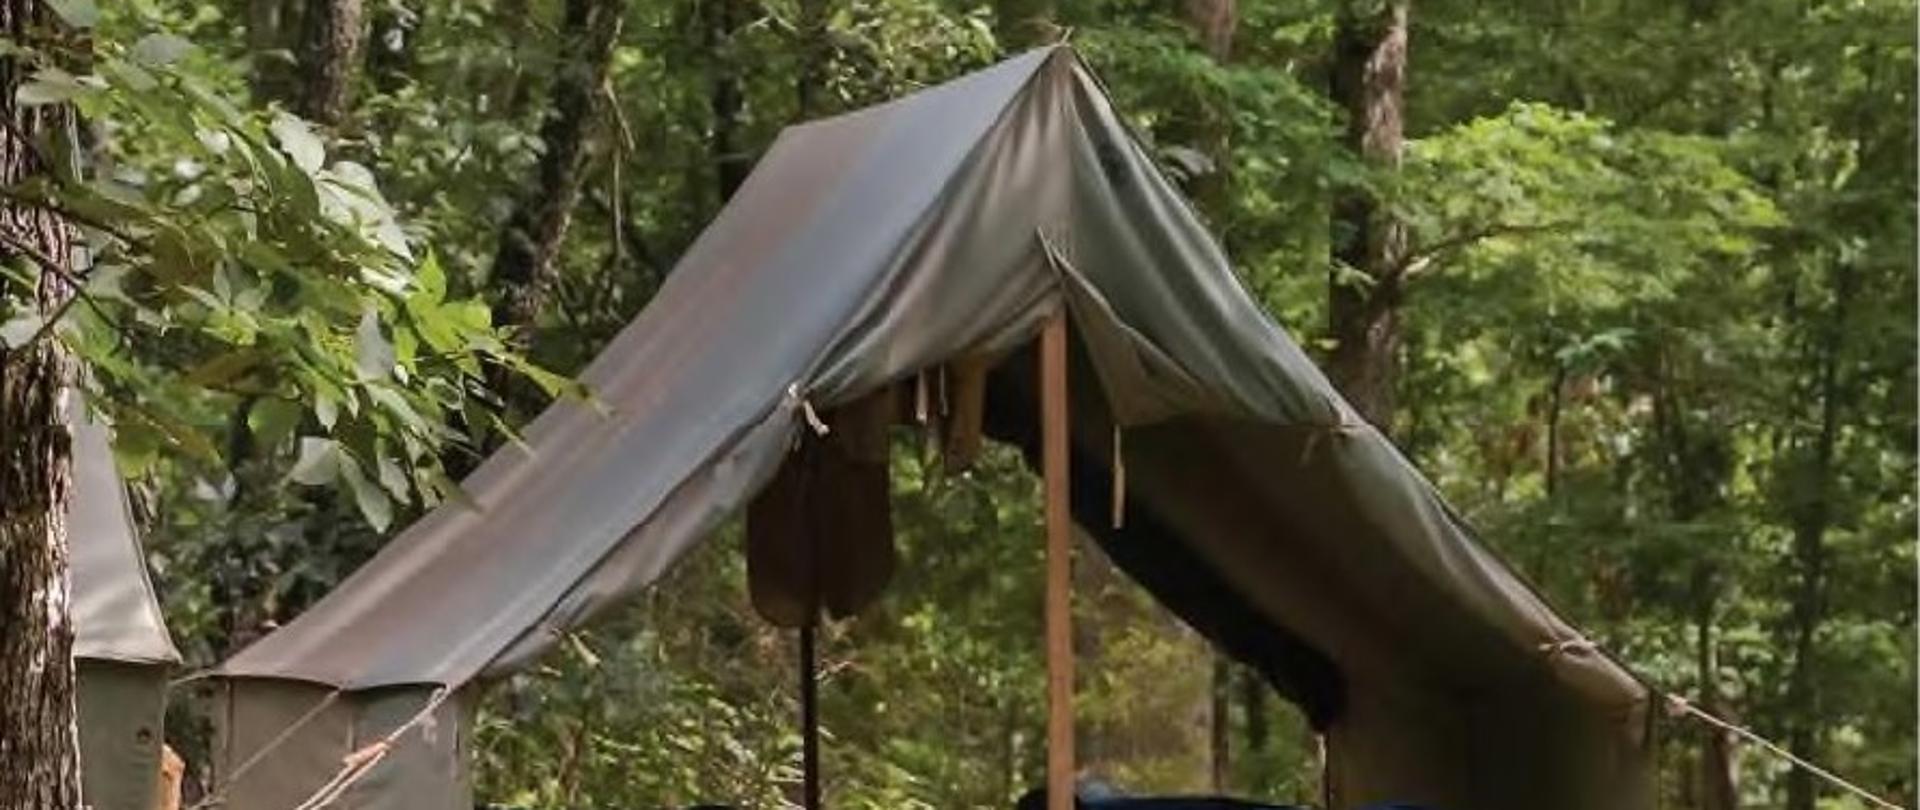 Instrukcja - obozy pod namiotami